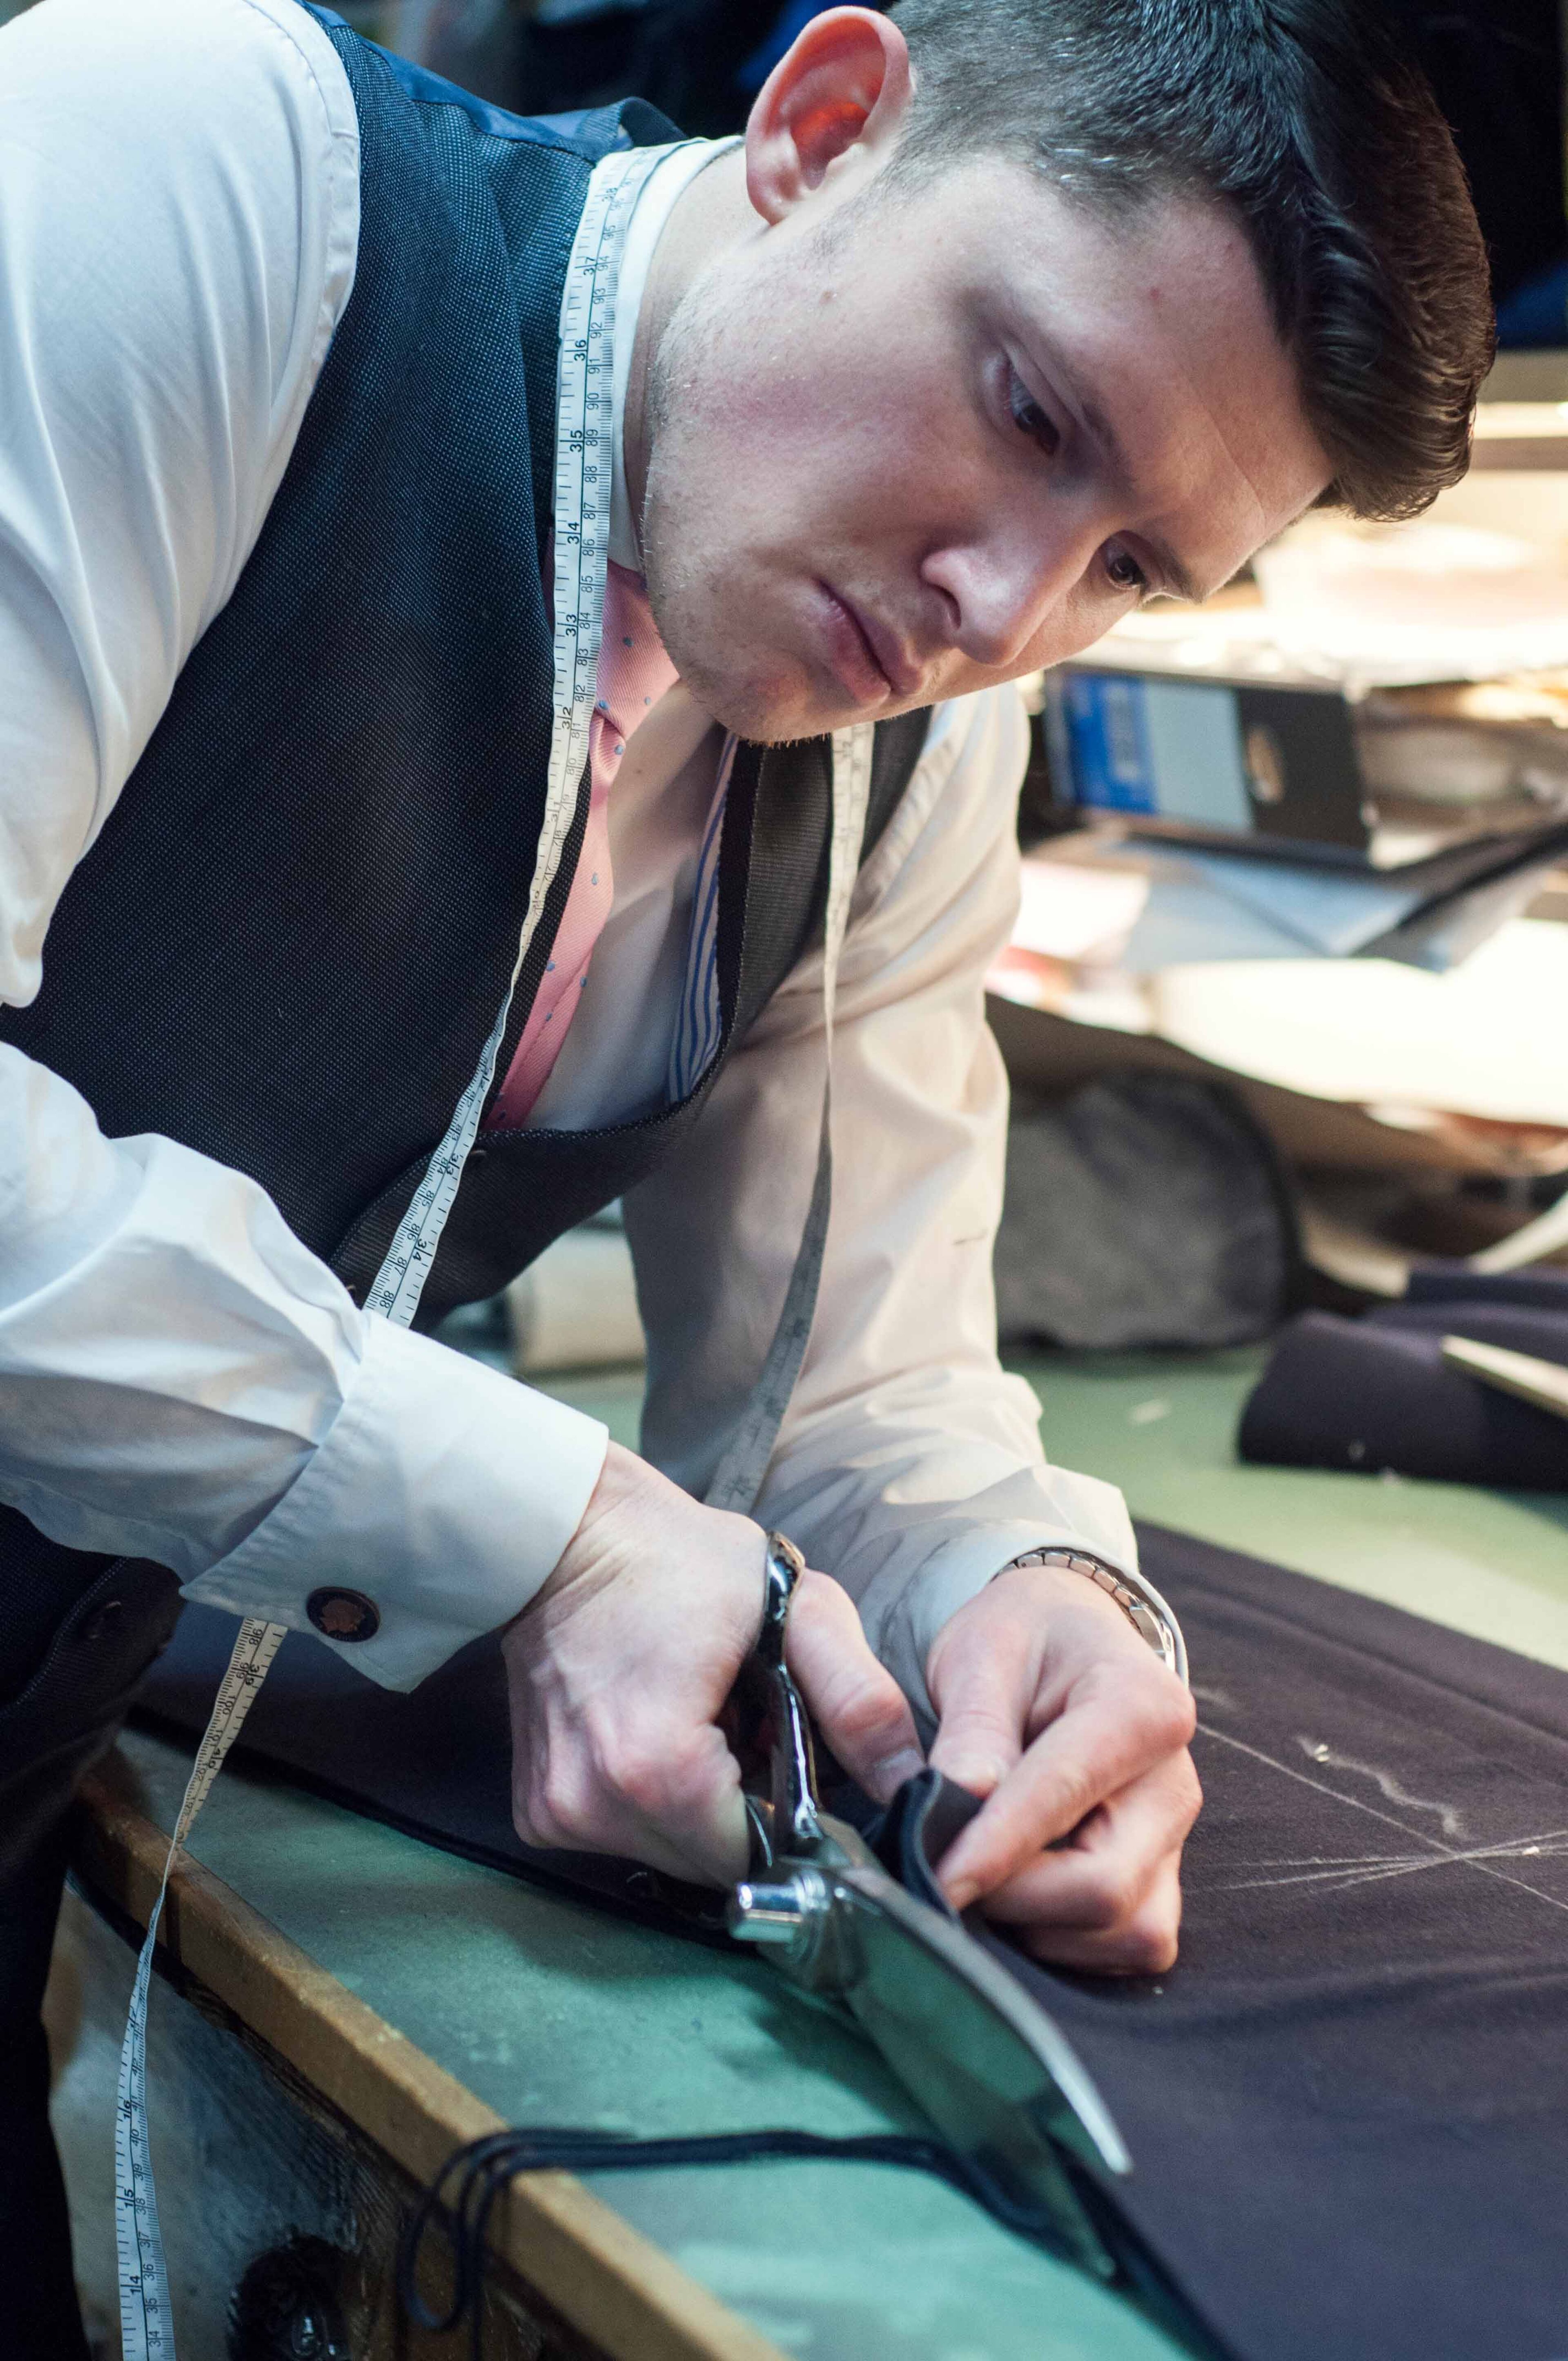 Un sastre enfocado recorta tela con tijeras en un banco de trabajo, con una cinta métrica alrededor de su cuello.